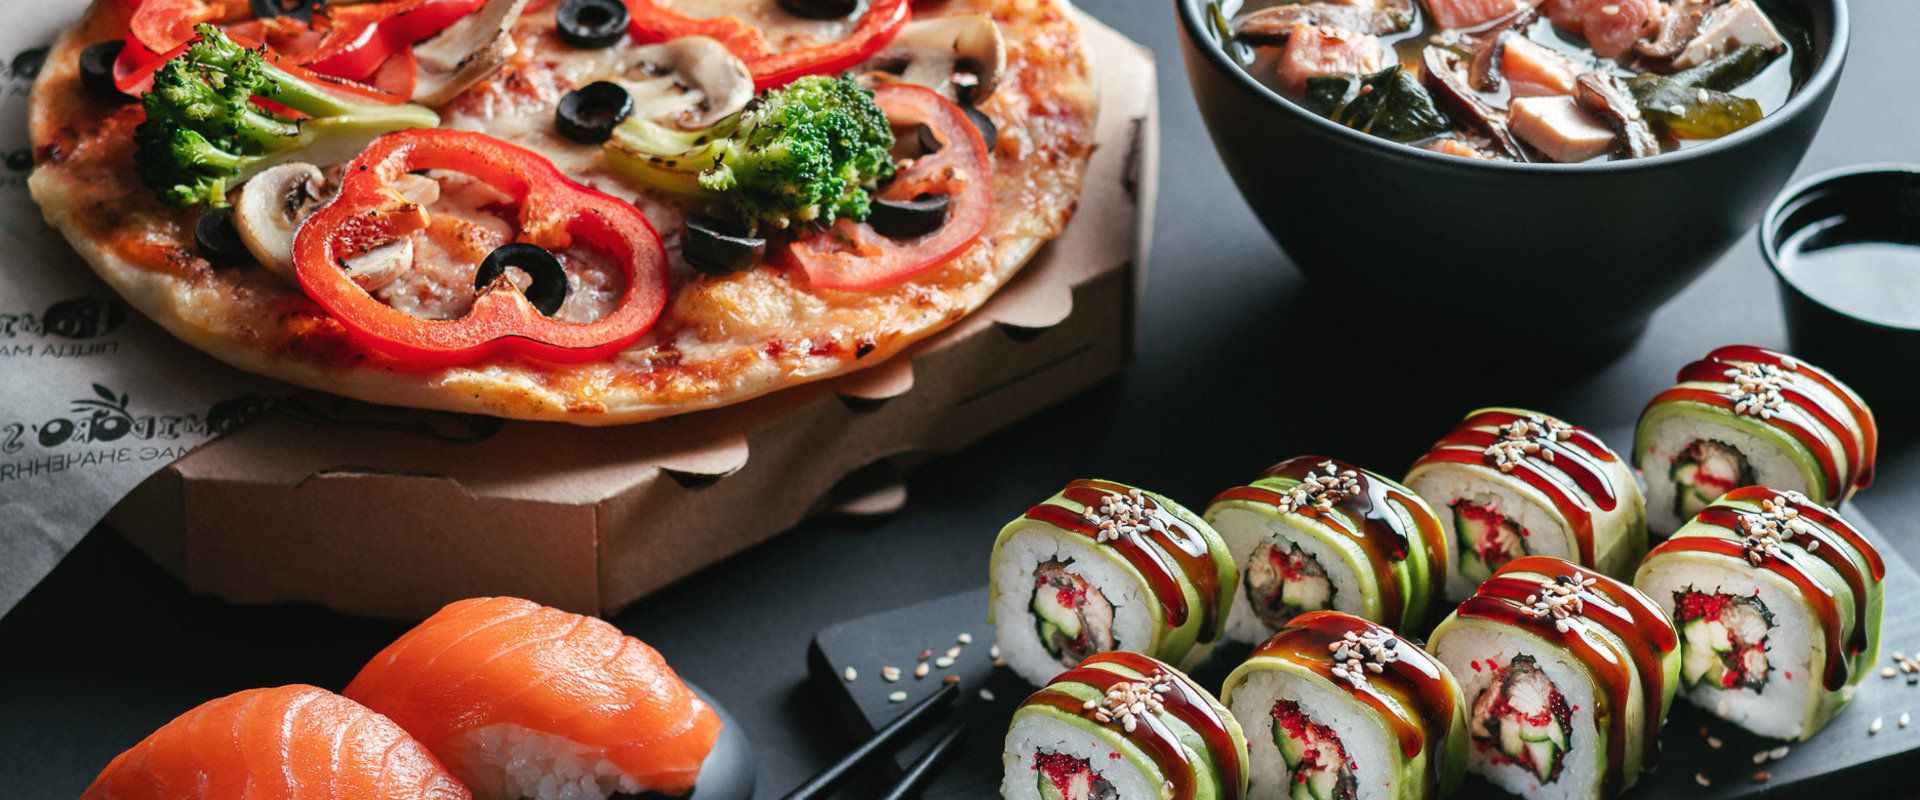 Пицца и суши в усть-каменогорске